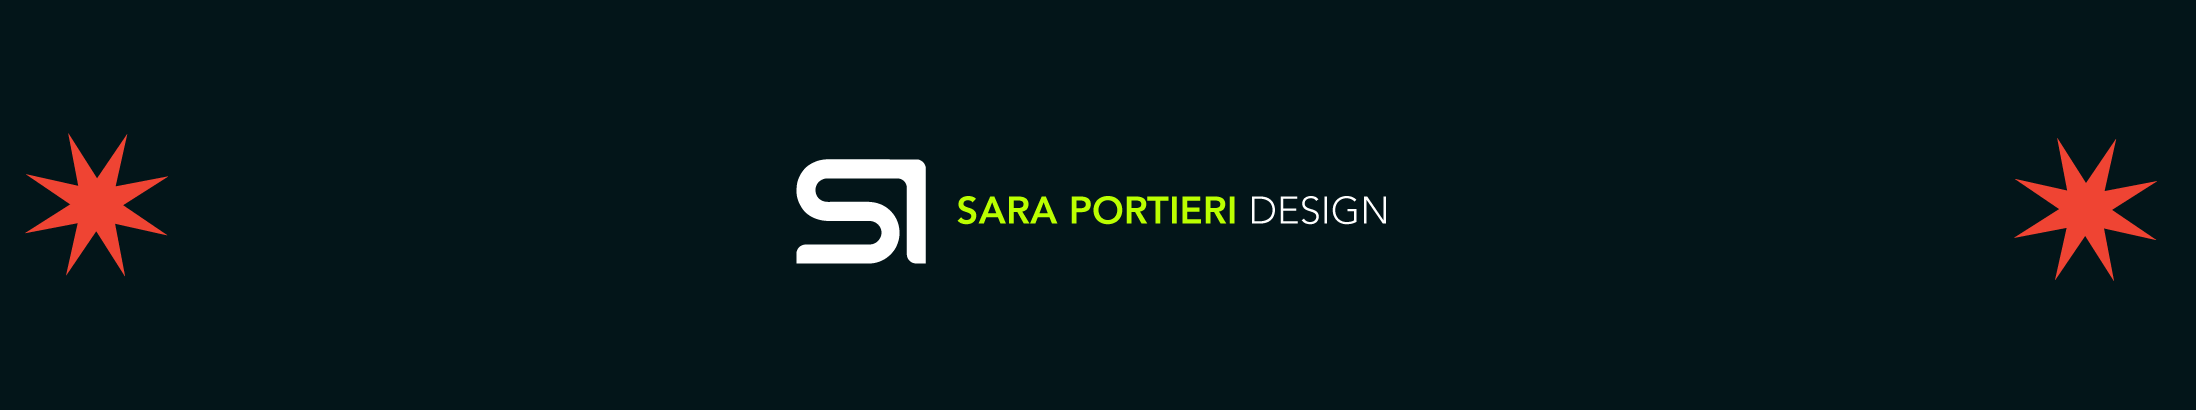 Sara Portieri's profile banner